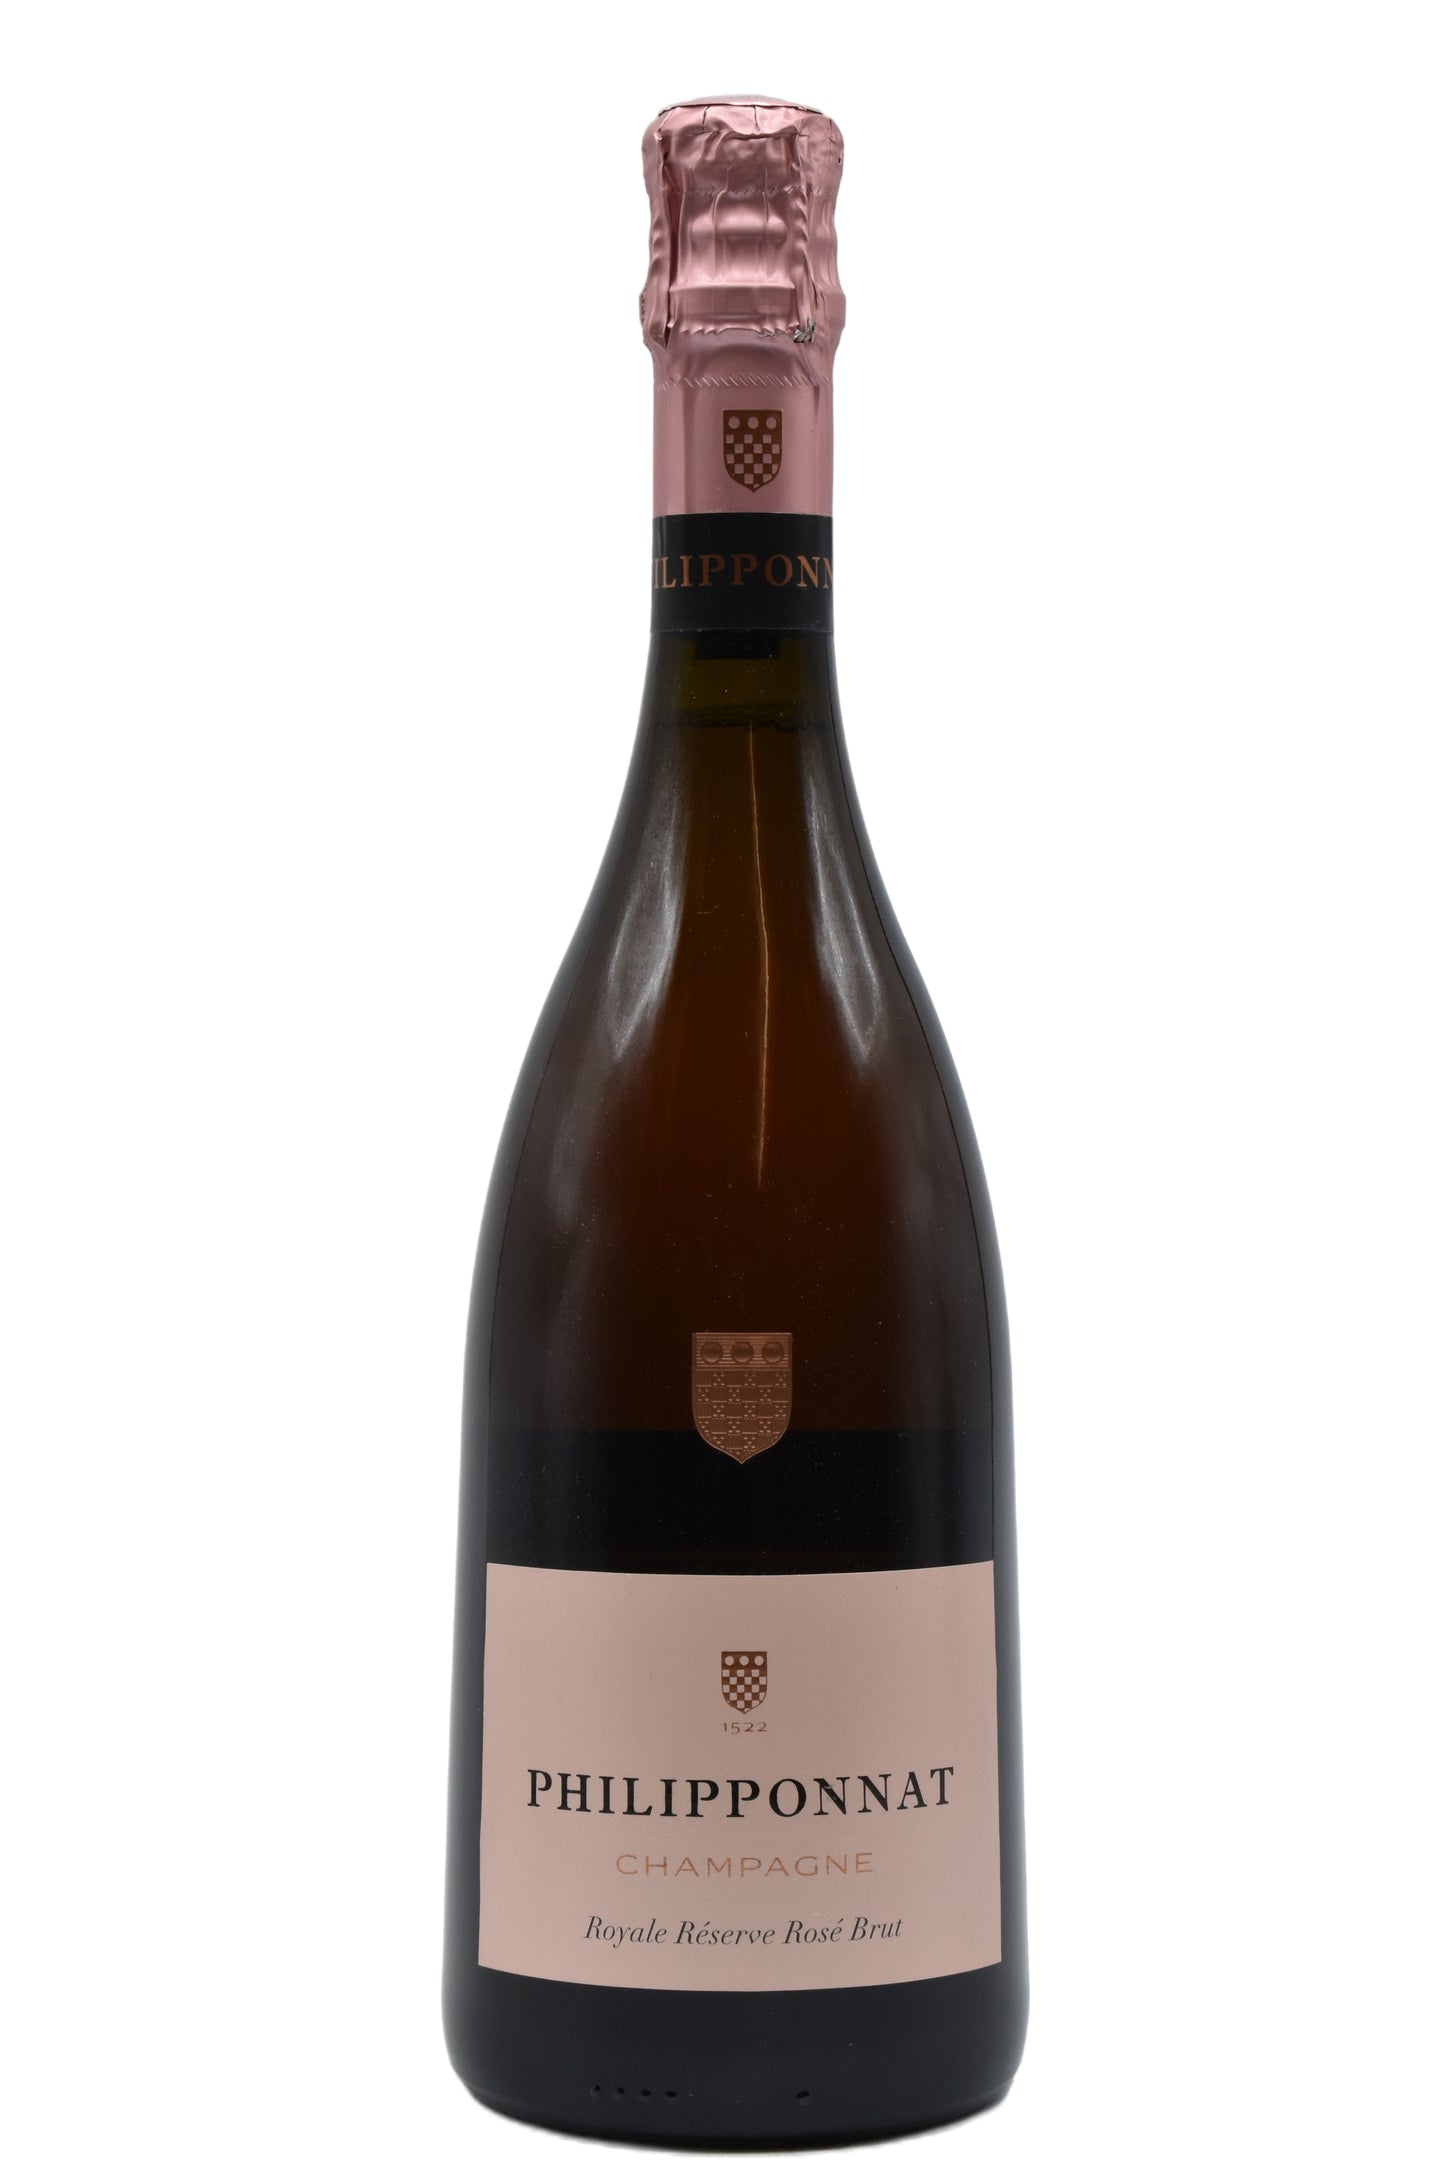 NV Philipponnat, Champagne Royale Reserve Rose Brut 750ml - Walker Wine Co.